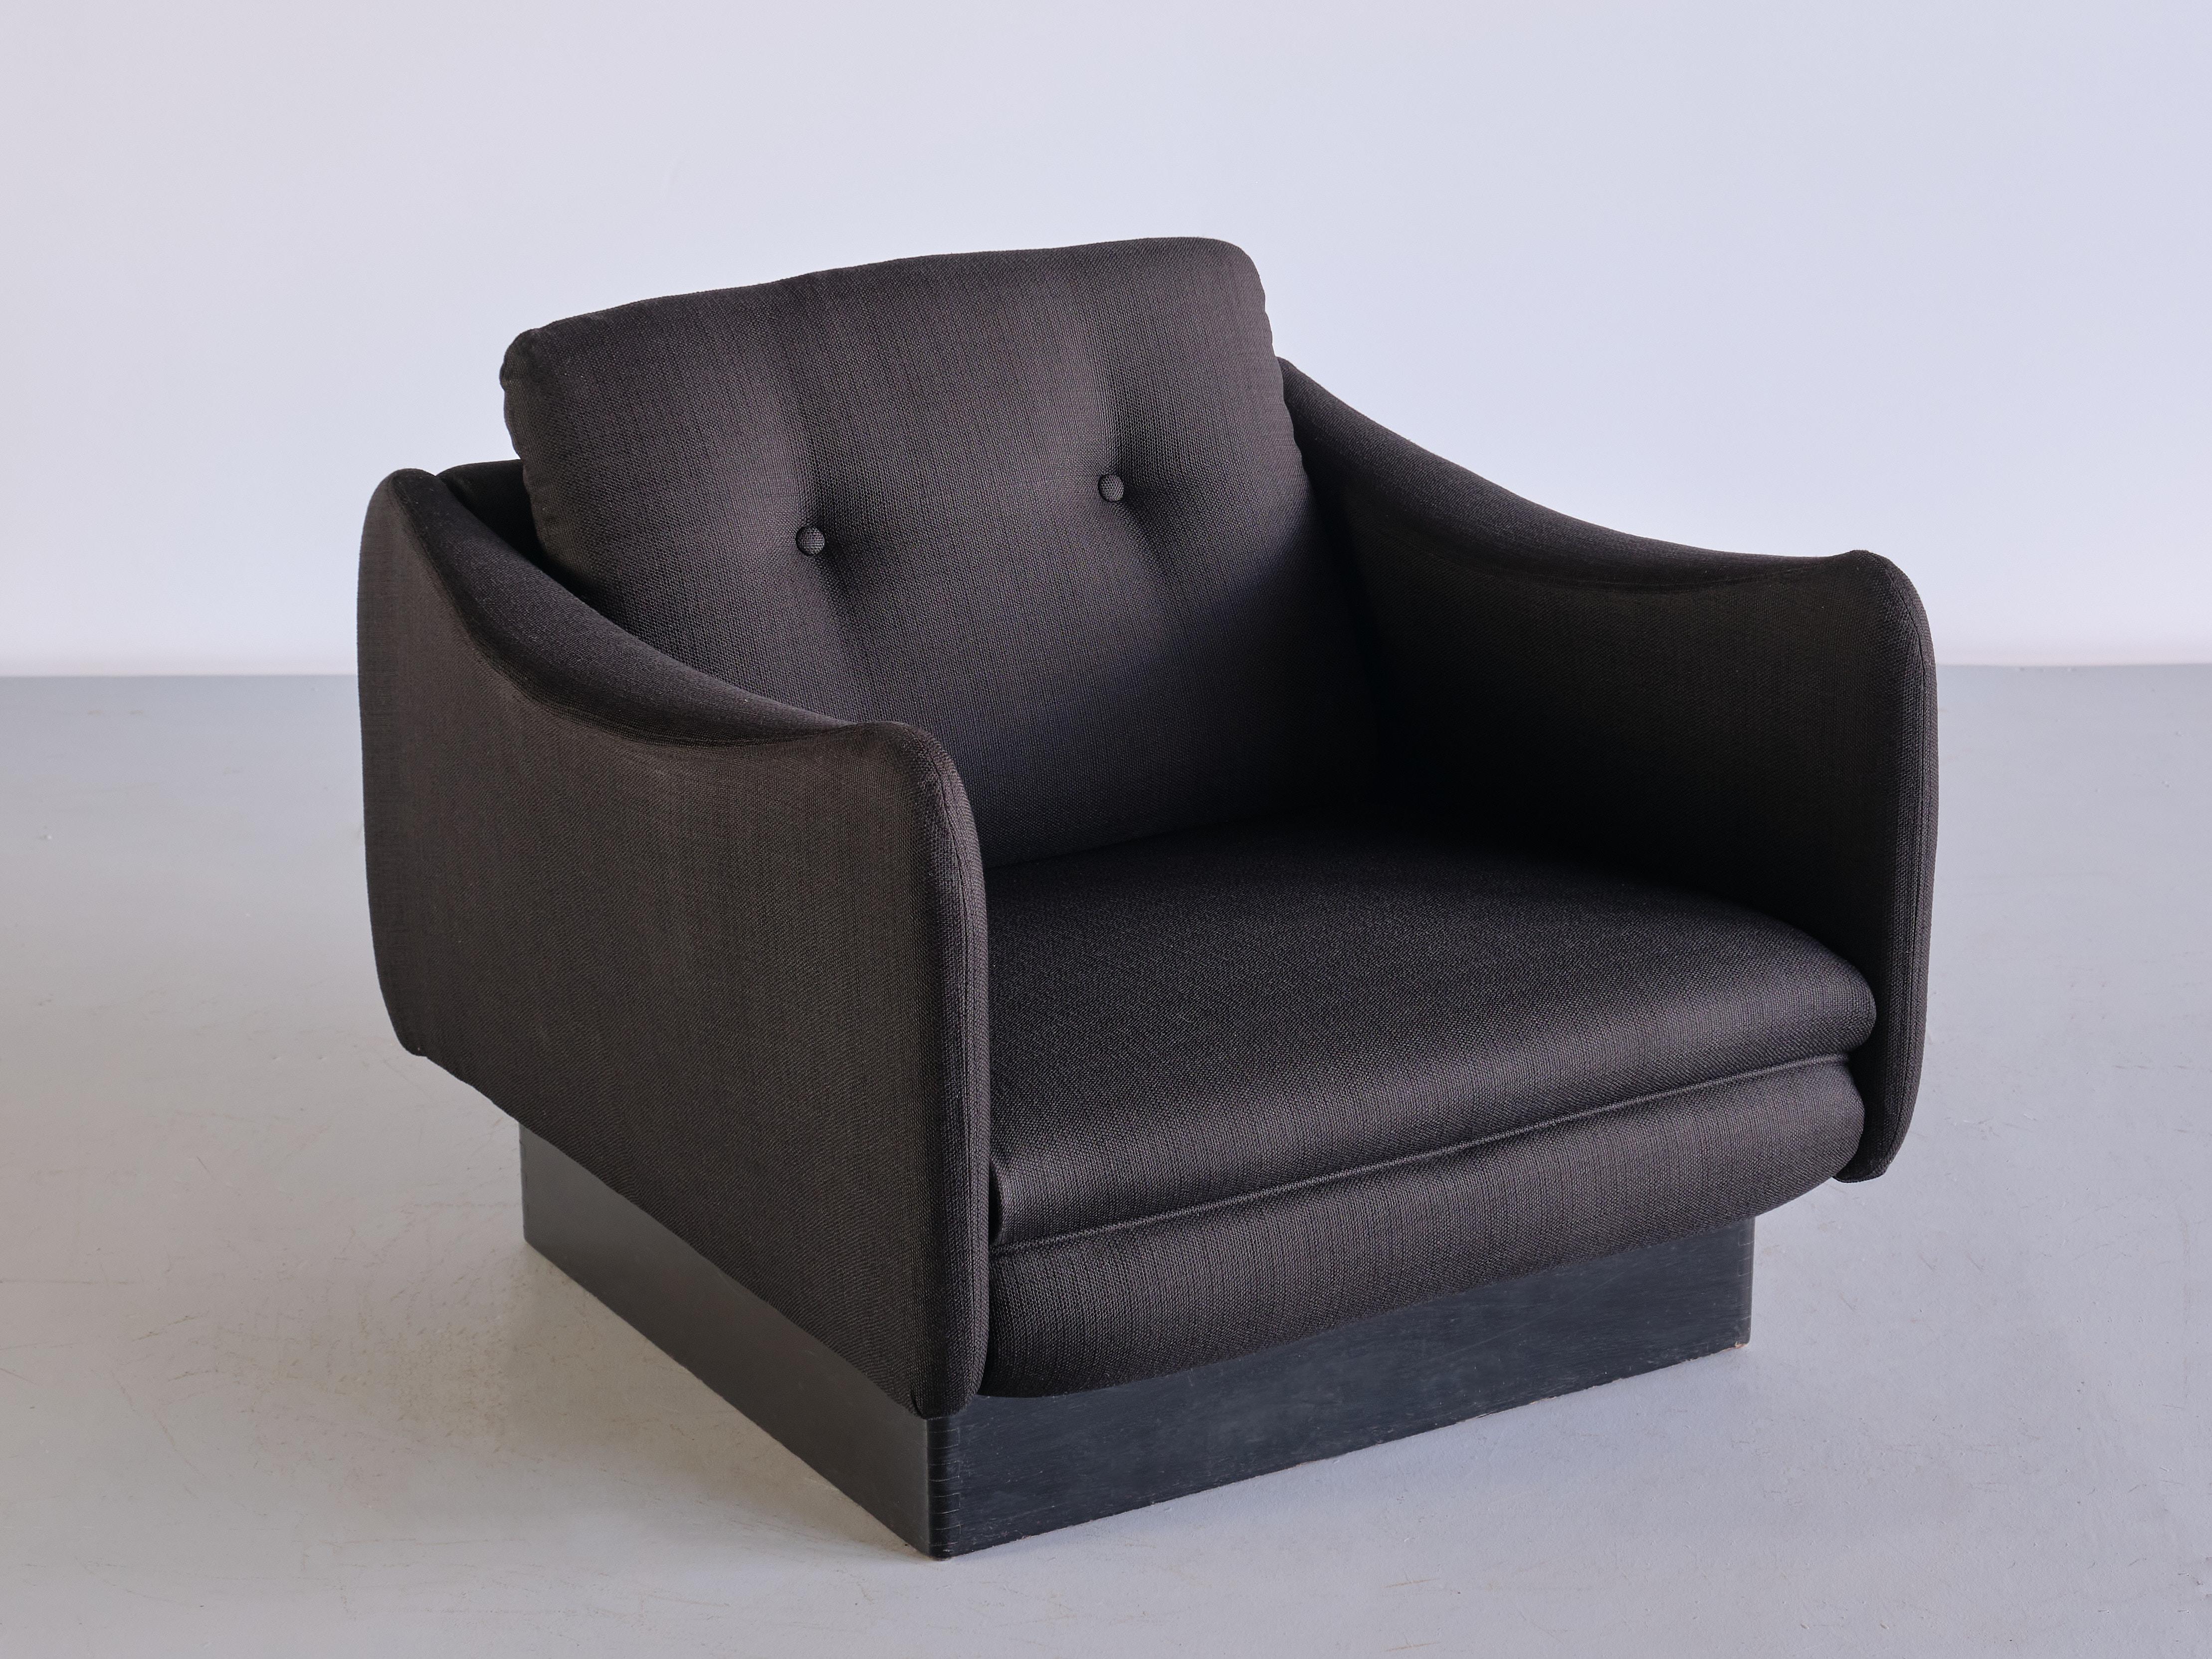 Cette chaise longue étonnante a été conçue par Michel Mortier et produite par le fabricant français Sièges Steiner en 1963. Ce modèle particulier, baptisé 